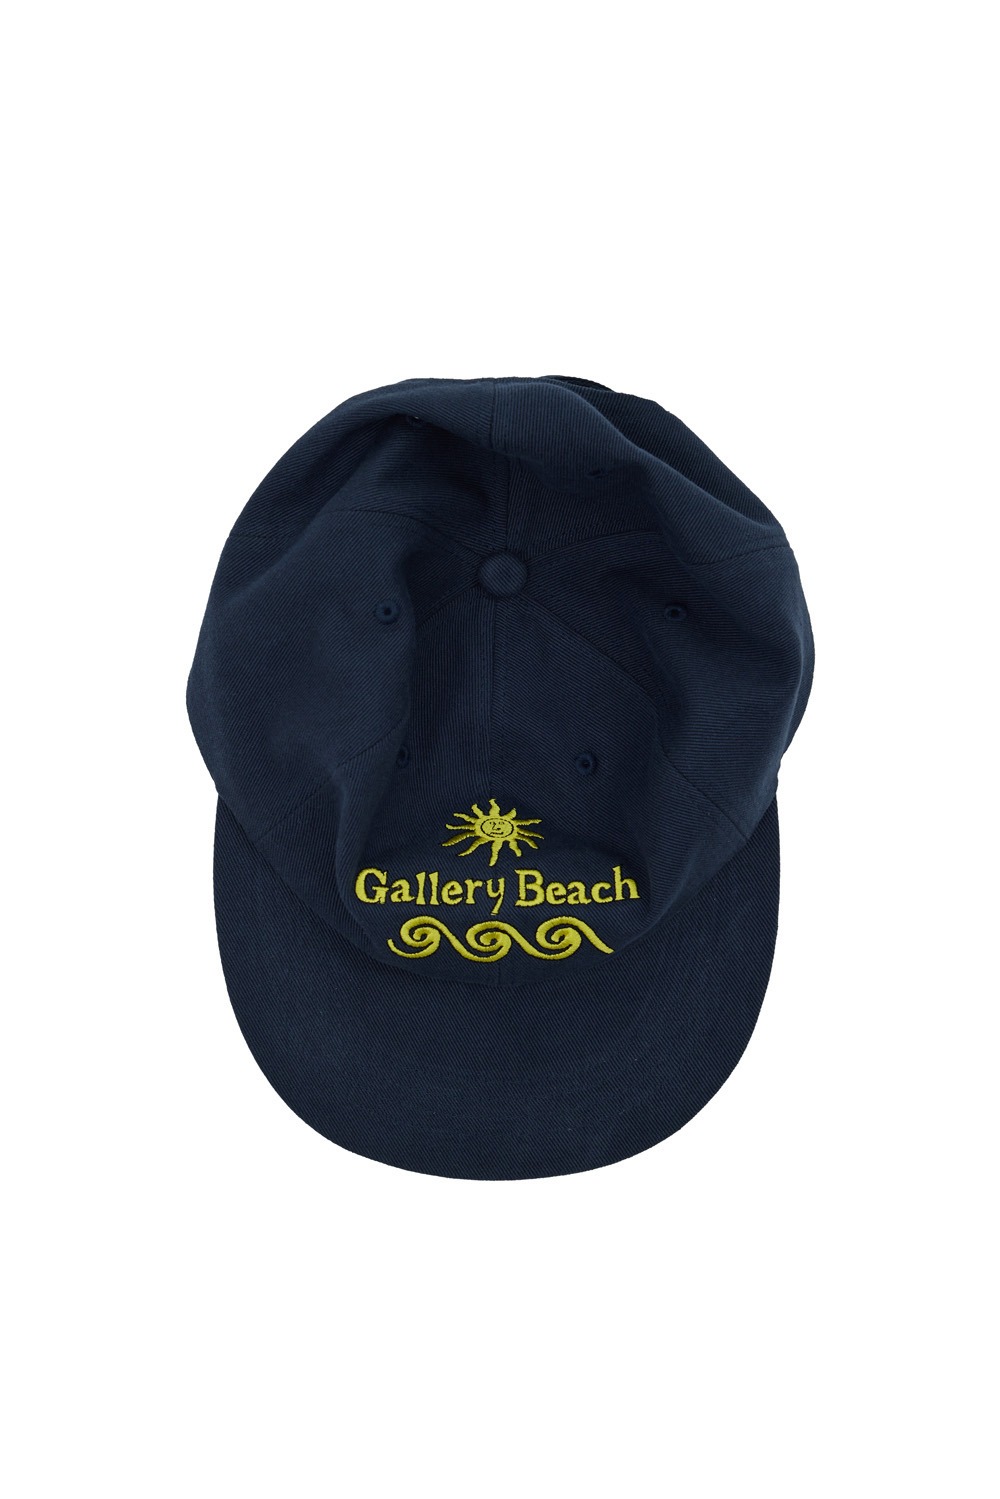 Gallery Beach Ball Cap - Navy